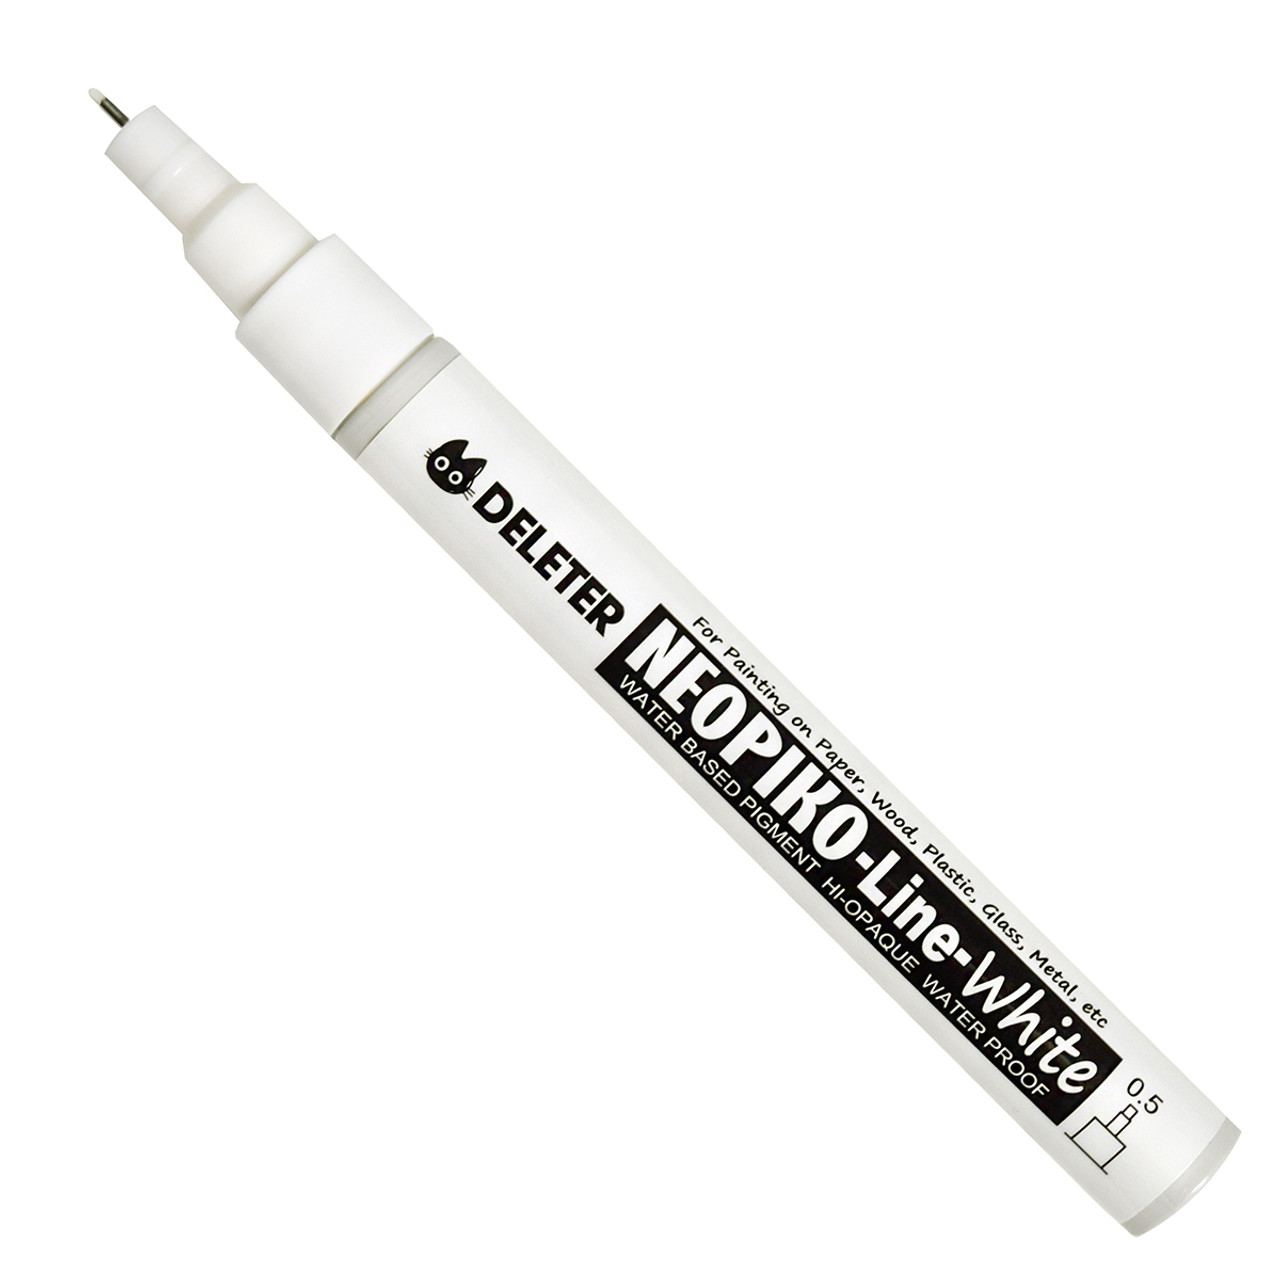 Deleter Neopiko Line White Pen, .5mm